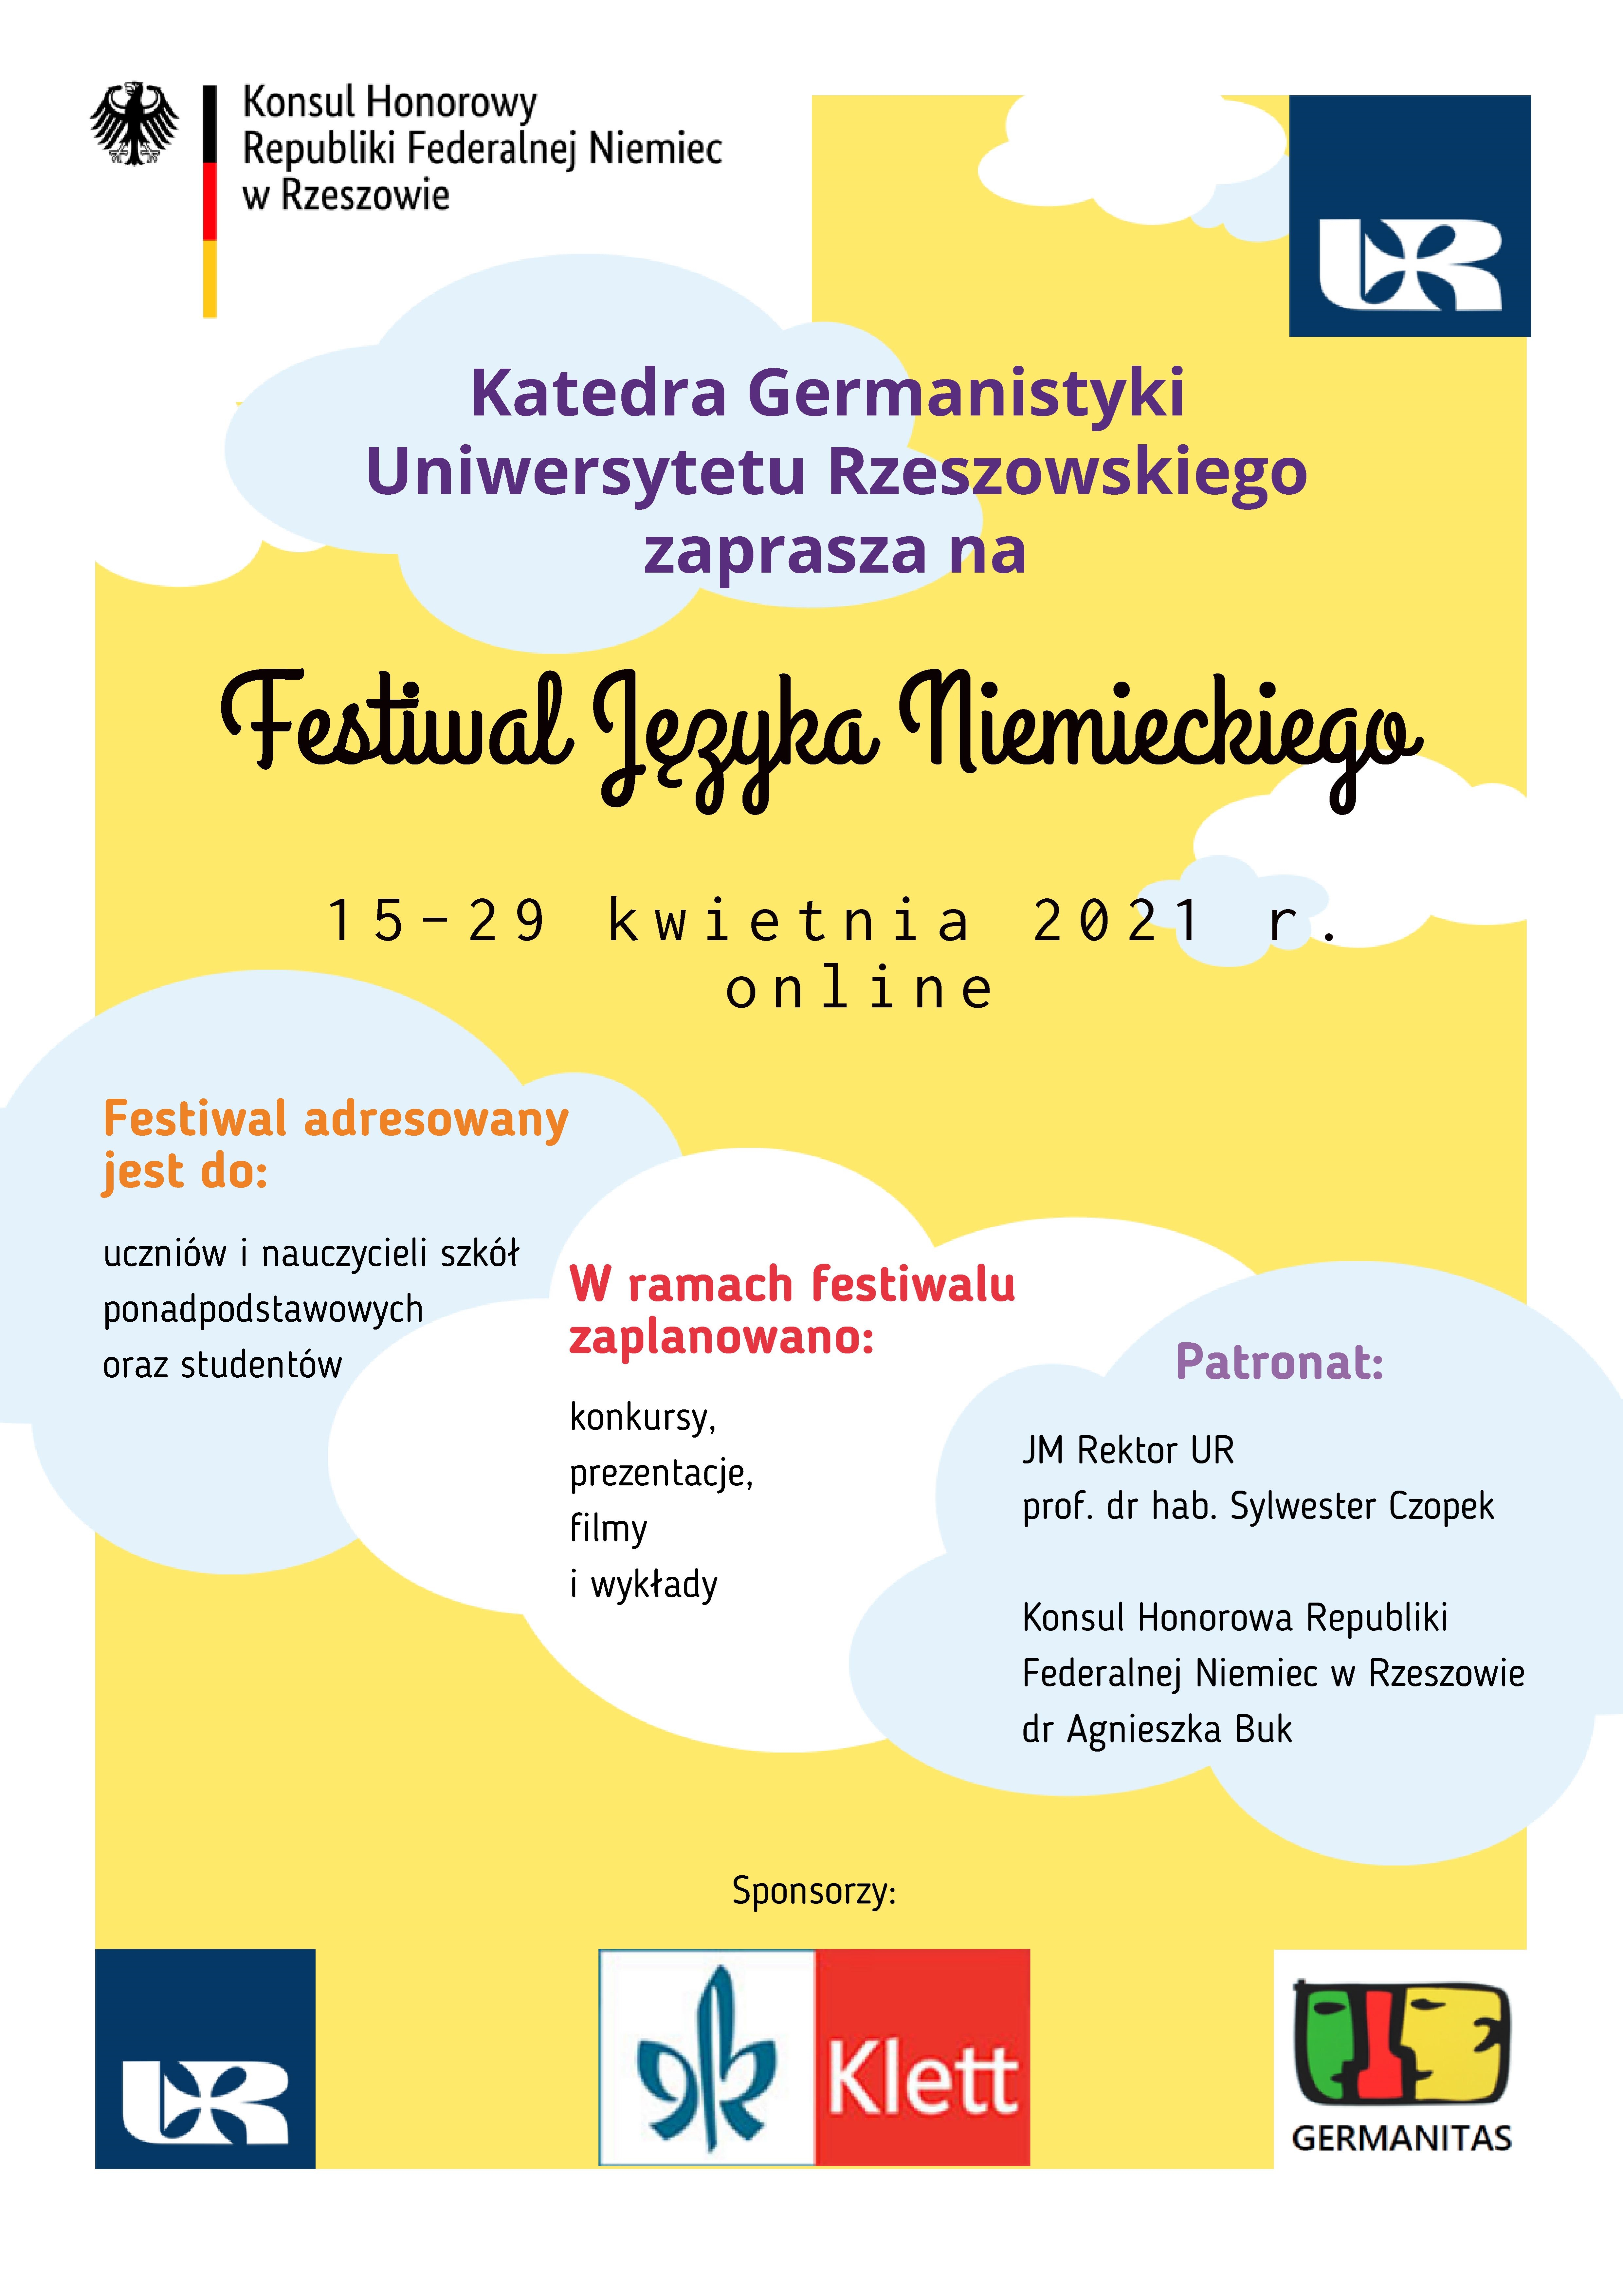 Festiwal Języka Niemieckiego.jpg [2.84 MB]